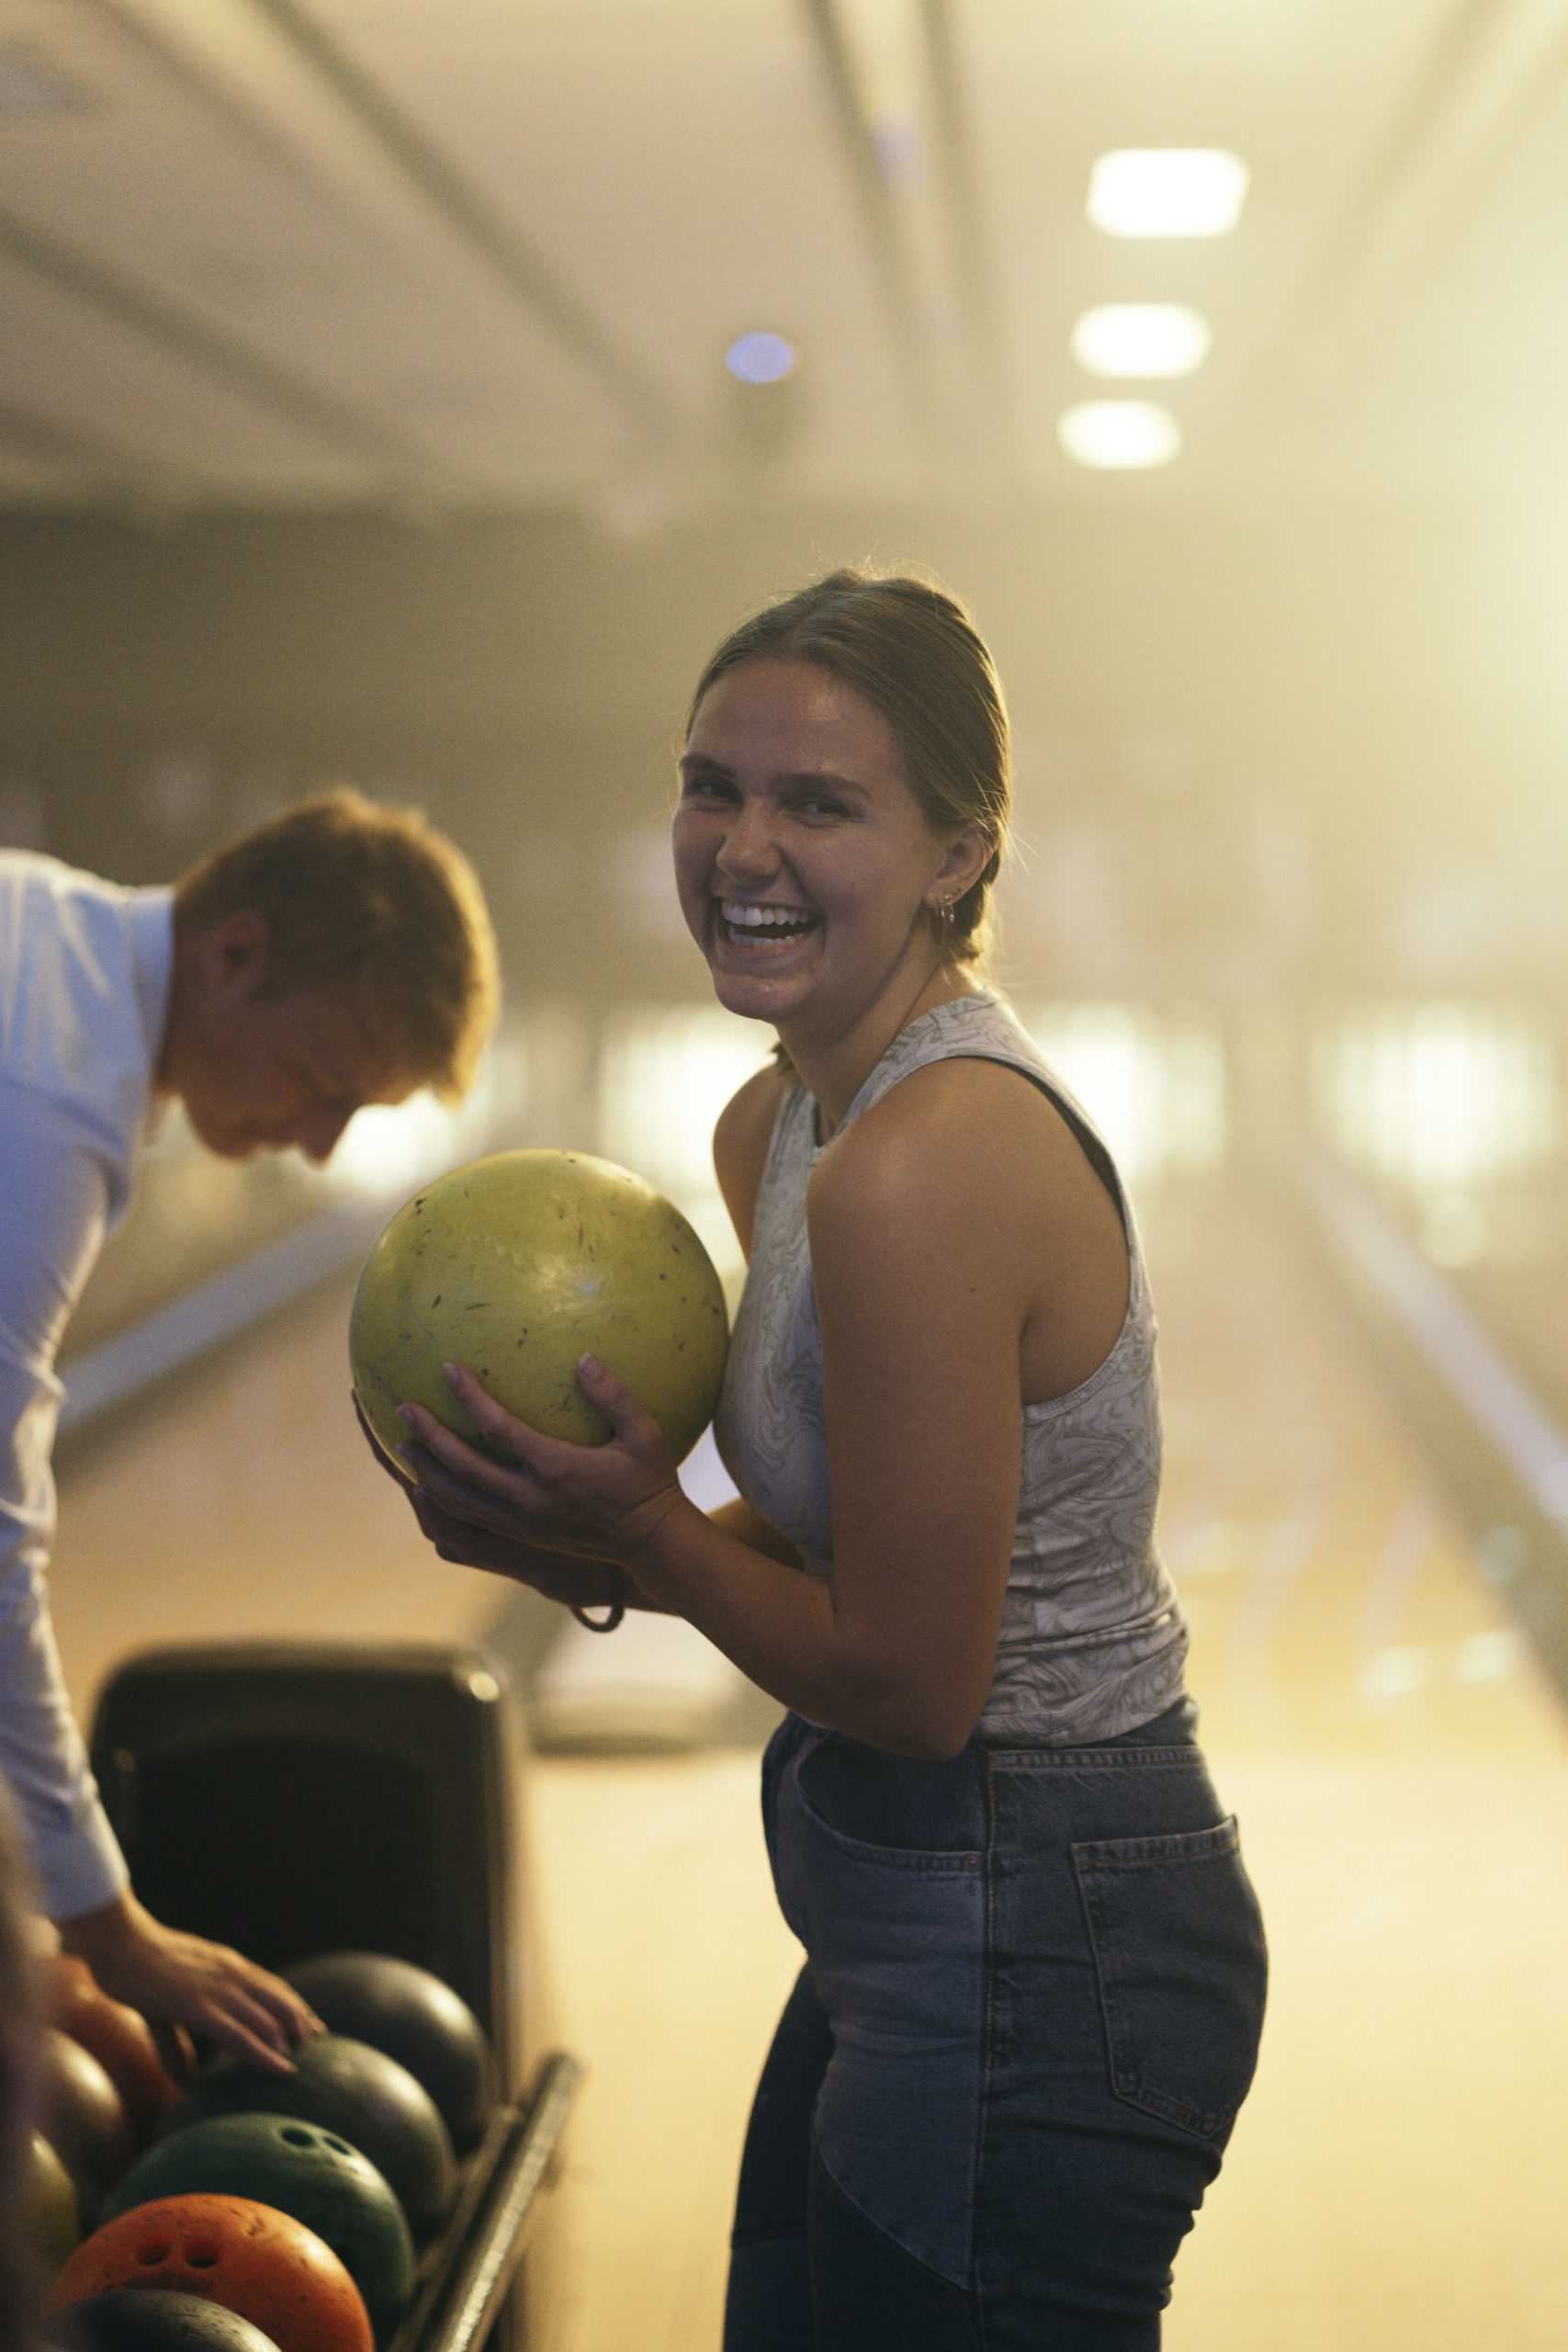 Pige står og griner mens hun holder en gulv bowlingkugle.